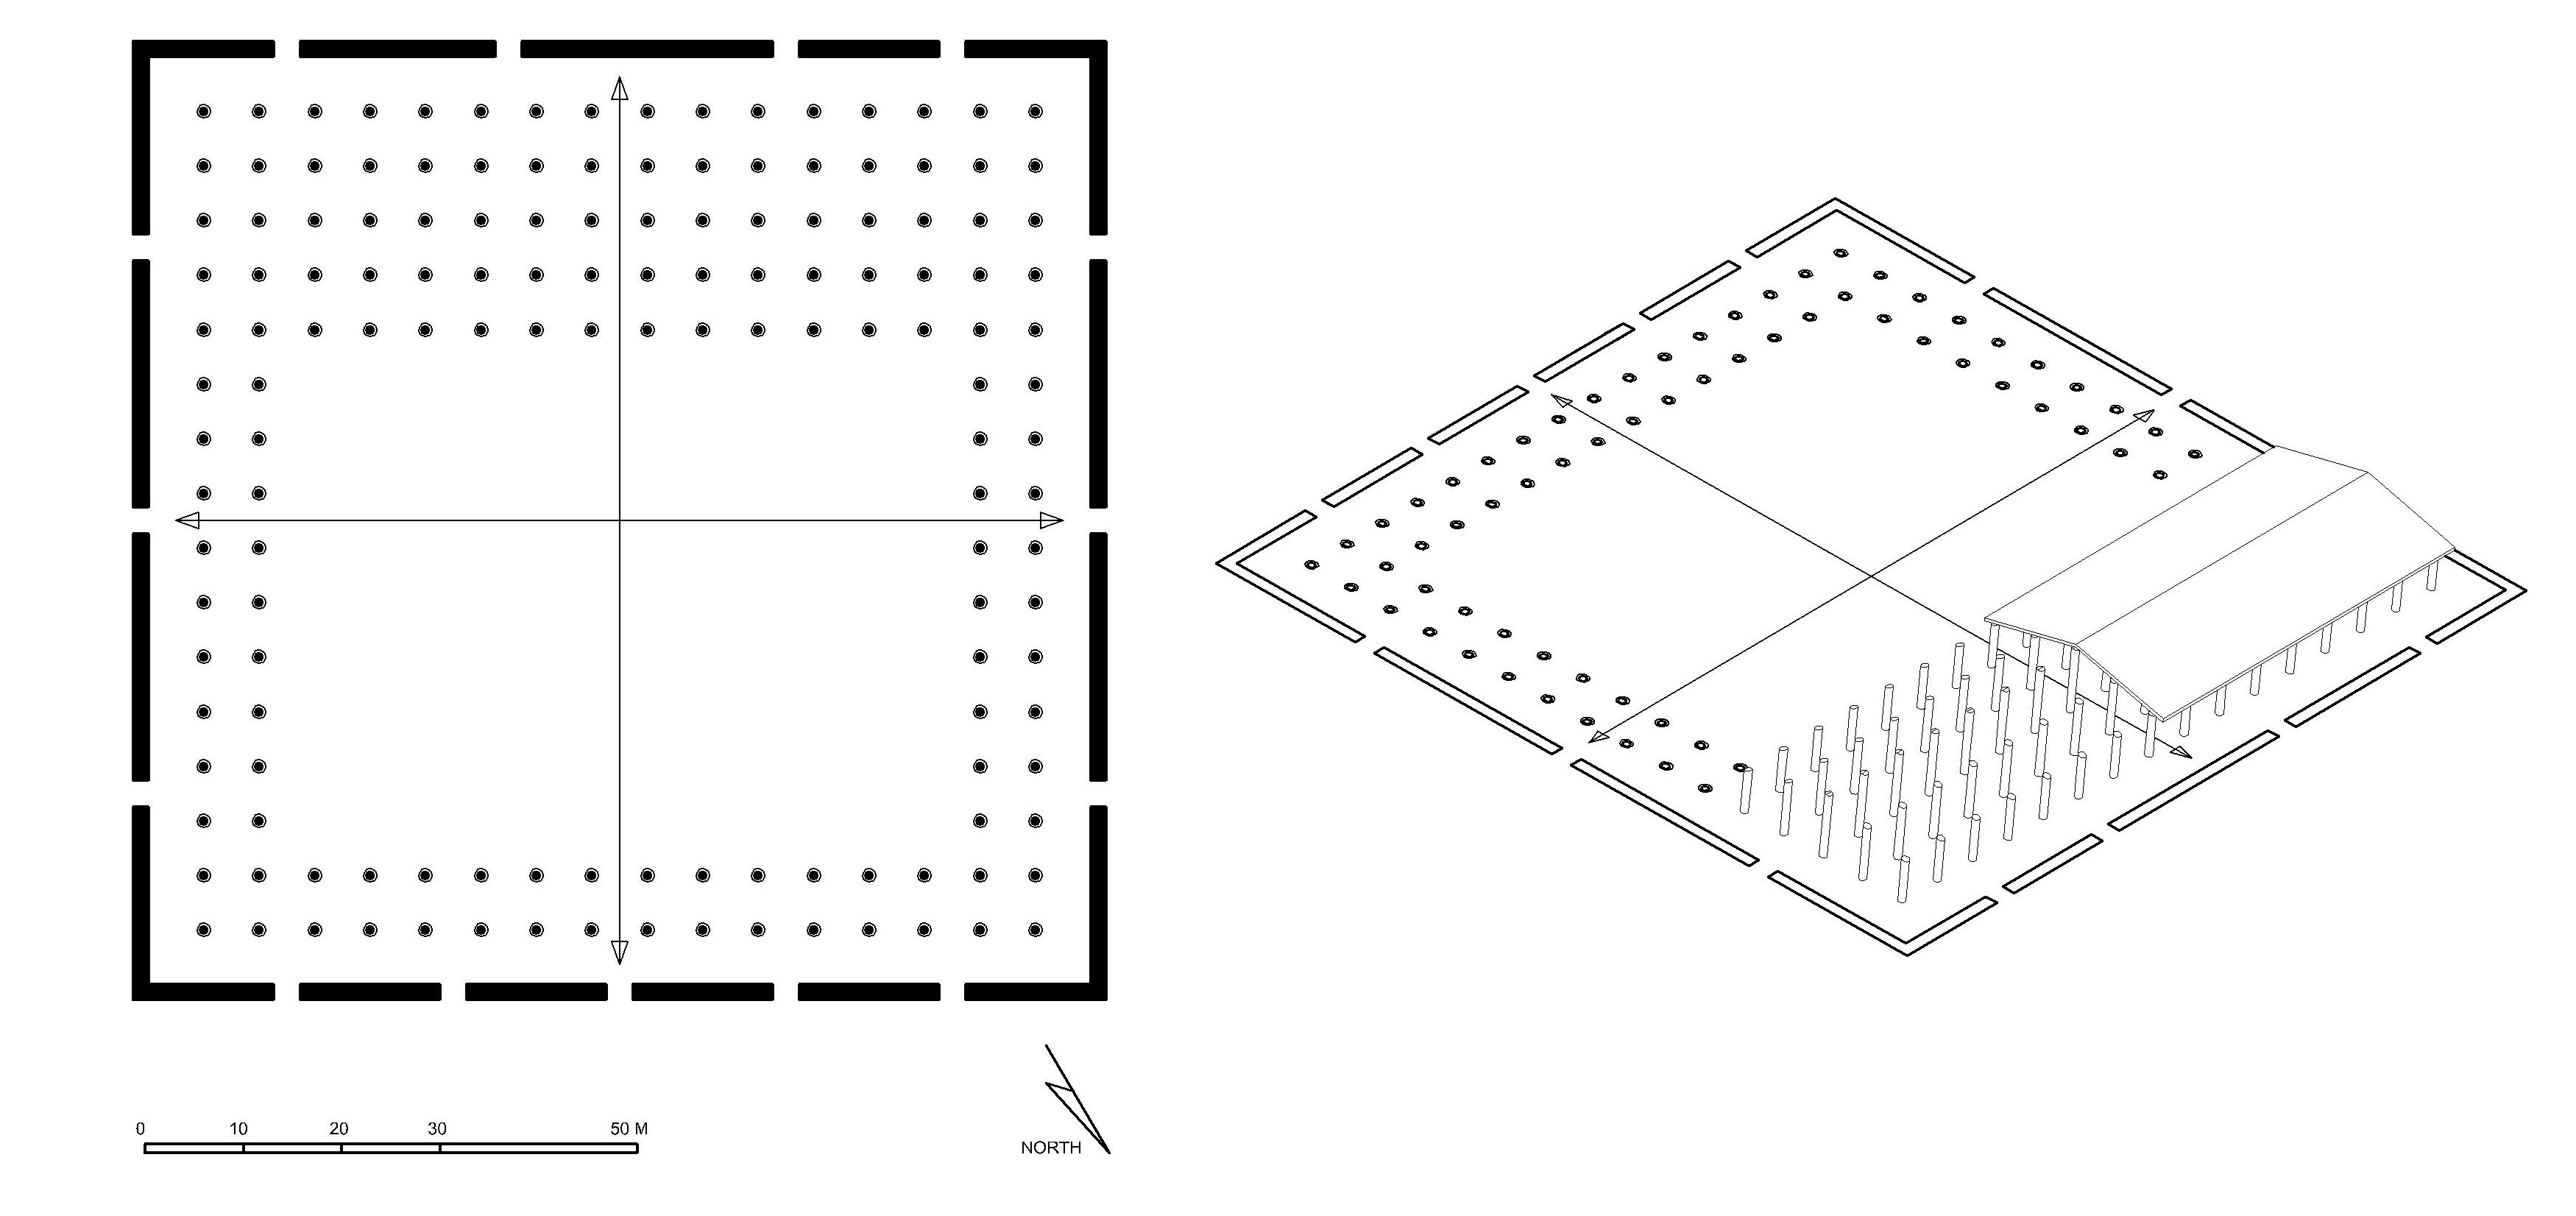 Floor plan of Great Mosque of Kufa